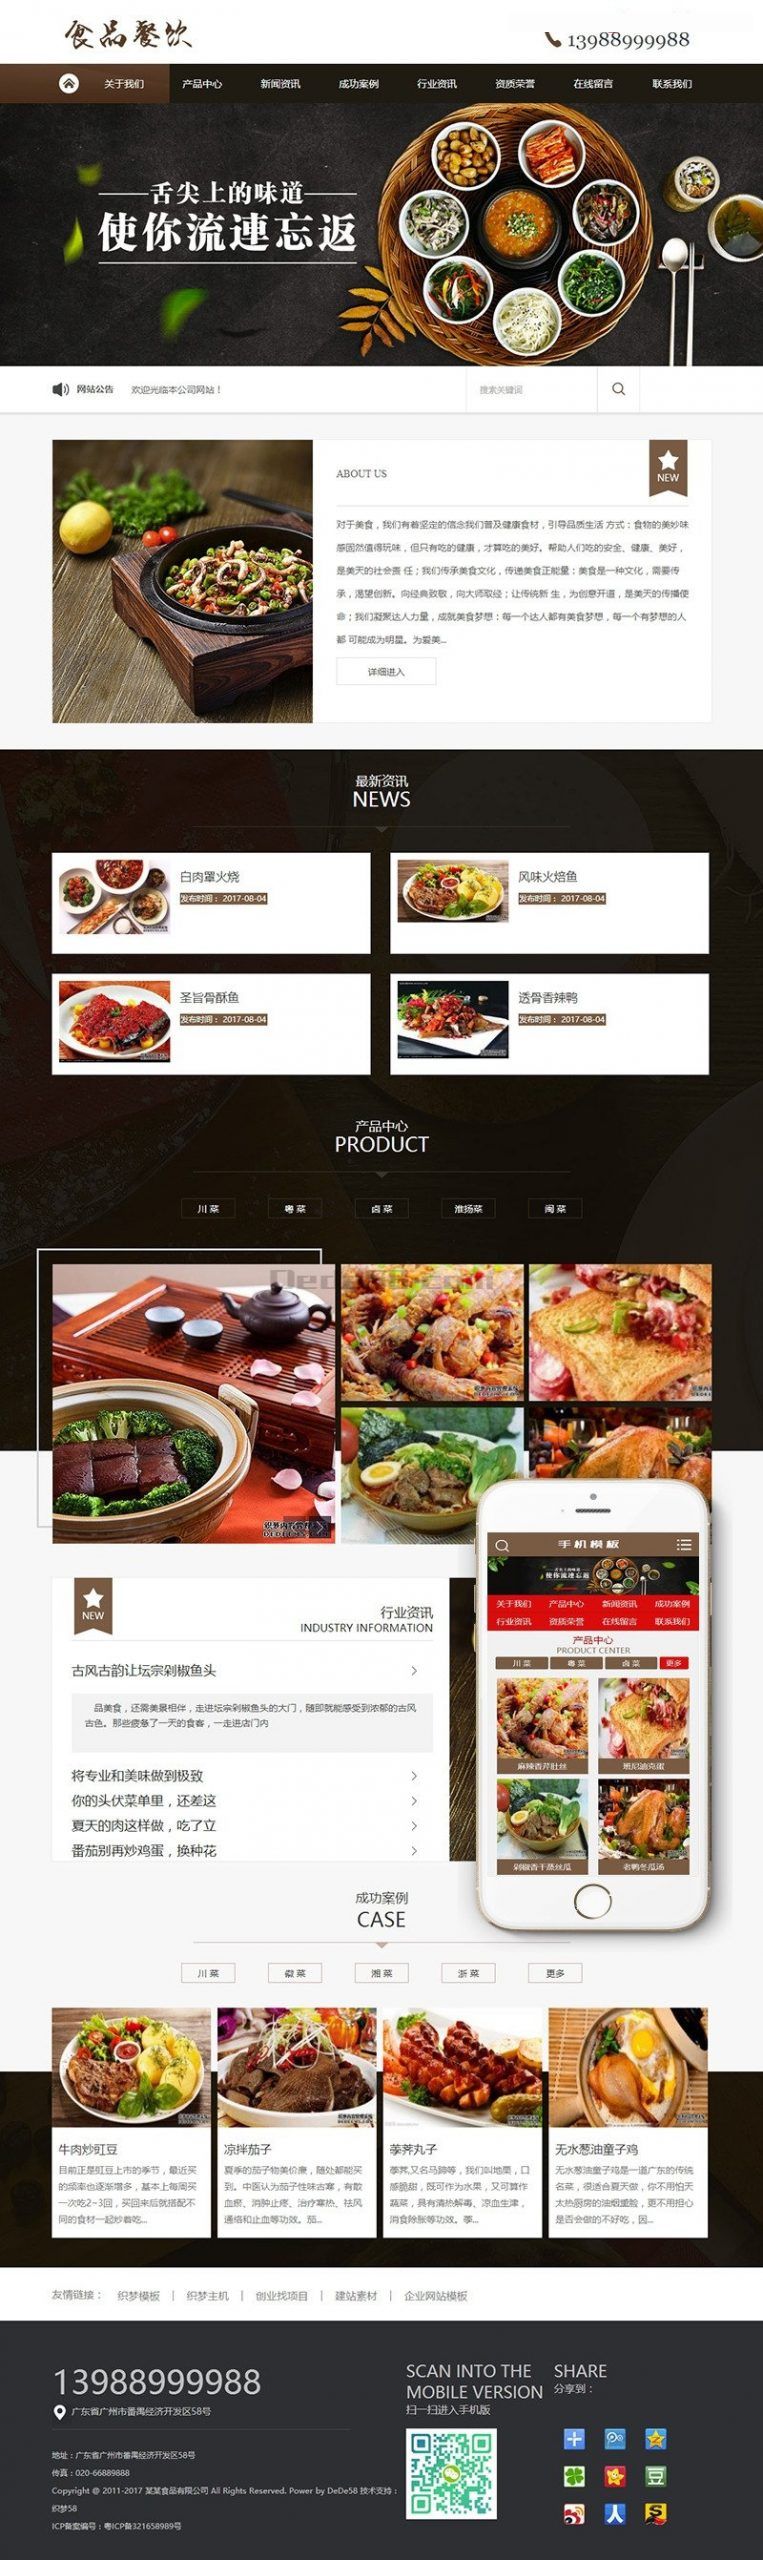 健康食品餐饮美食类网站源码 dedecms织梦模板 (带手机端)插图